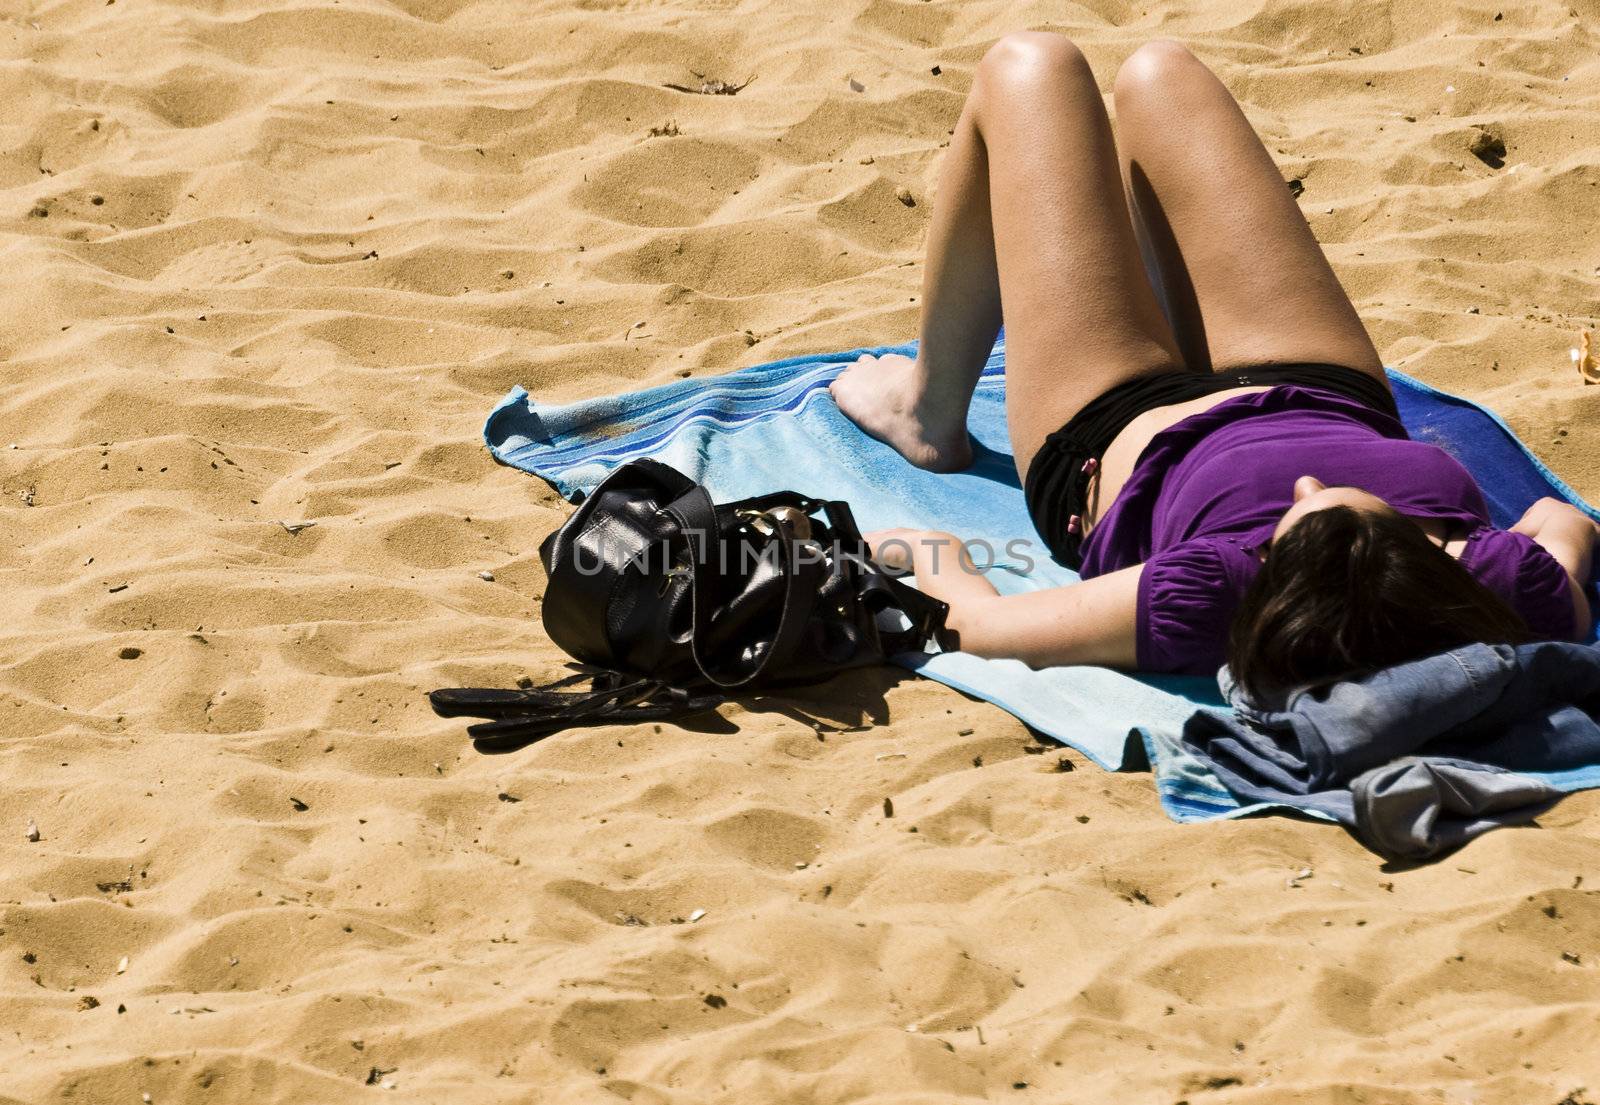 Woman sunbathing on a beach in spring in Malta